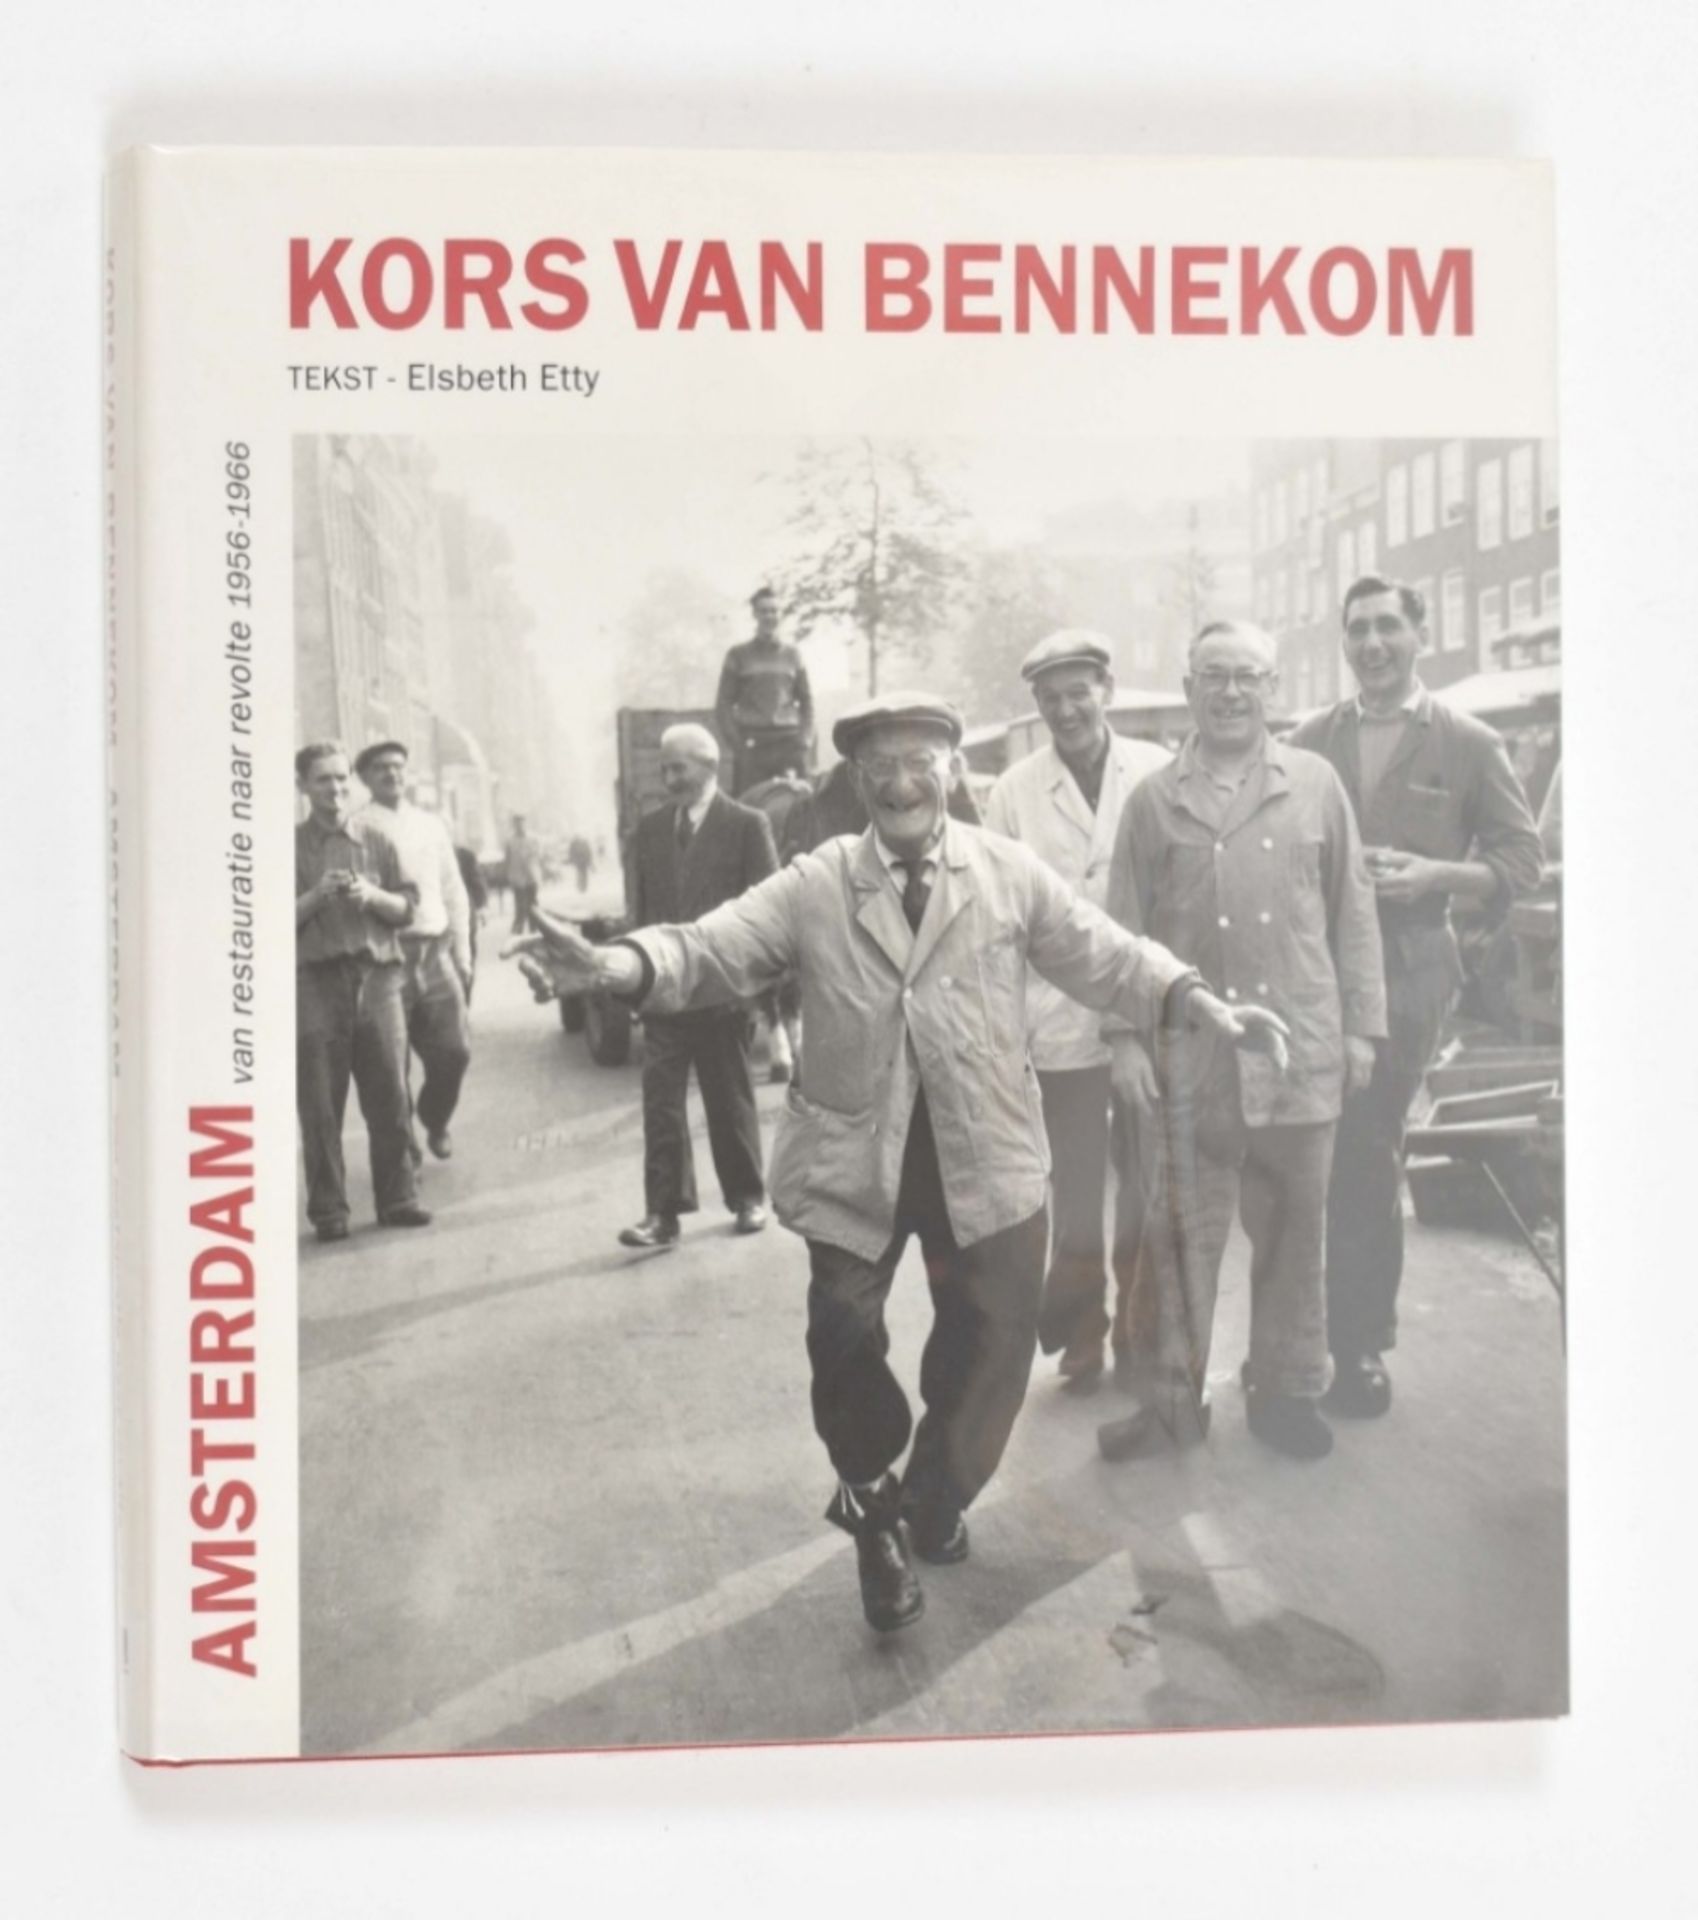 Kors van Bennekom (1933-2016). Amsterdam van restauratie naar revolte